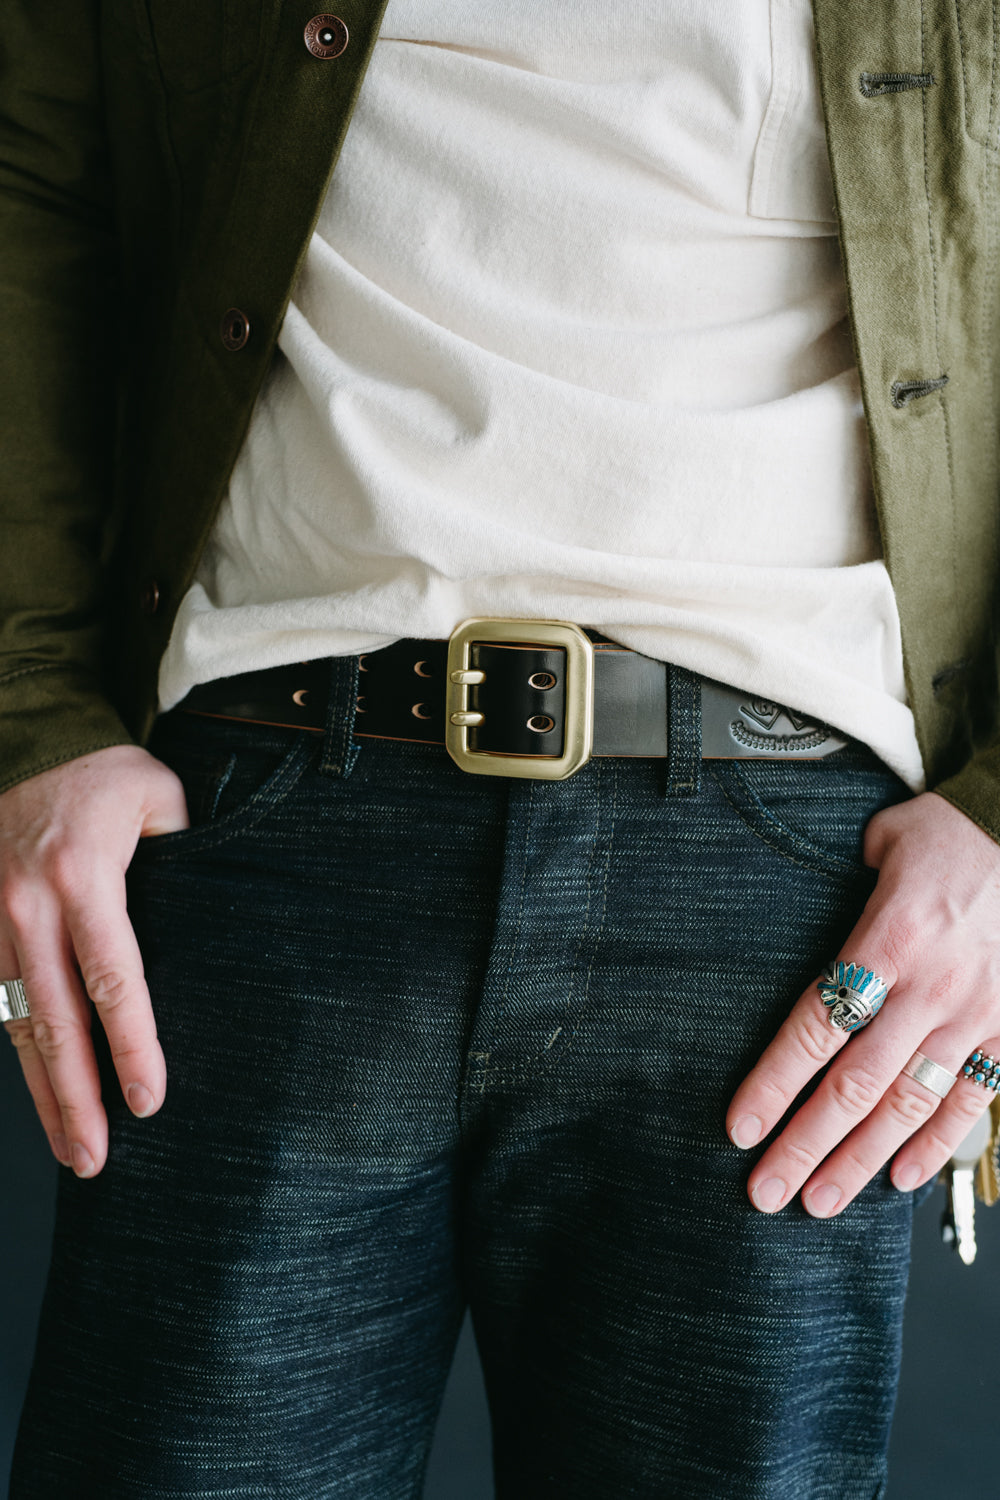 Handmade, oak bark leather heavy Garrison belt with solid brass buckle. —  ERNEST WALKER LTD.